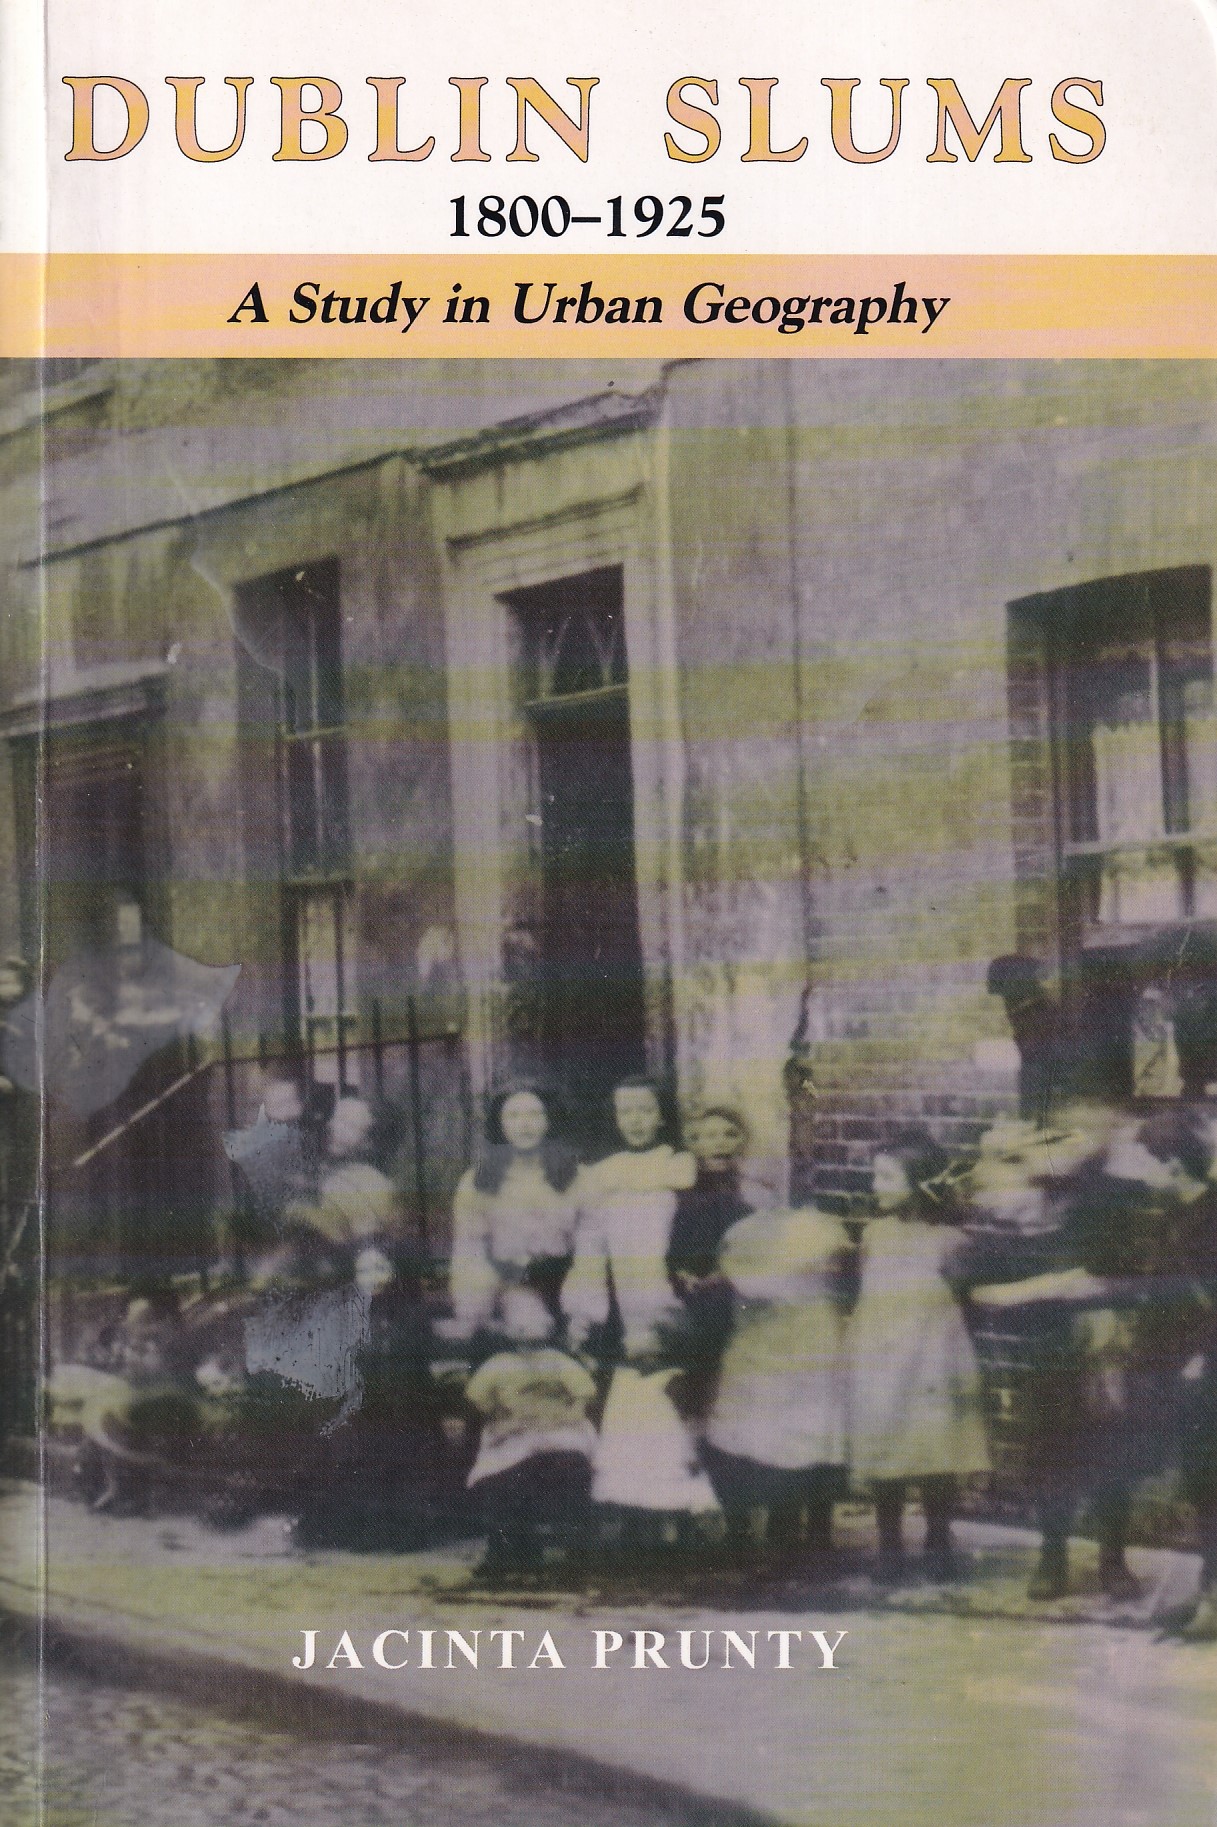 Dublin Slums, 1800-1925: A Study in Urban Geography by Jacinta Prunty